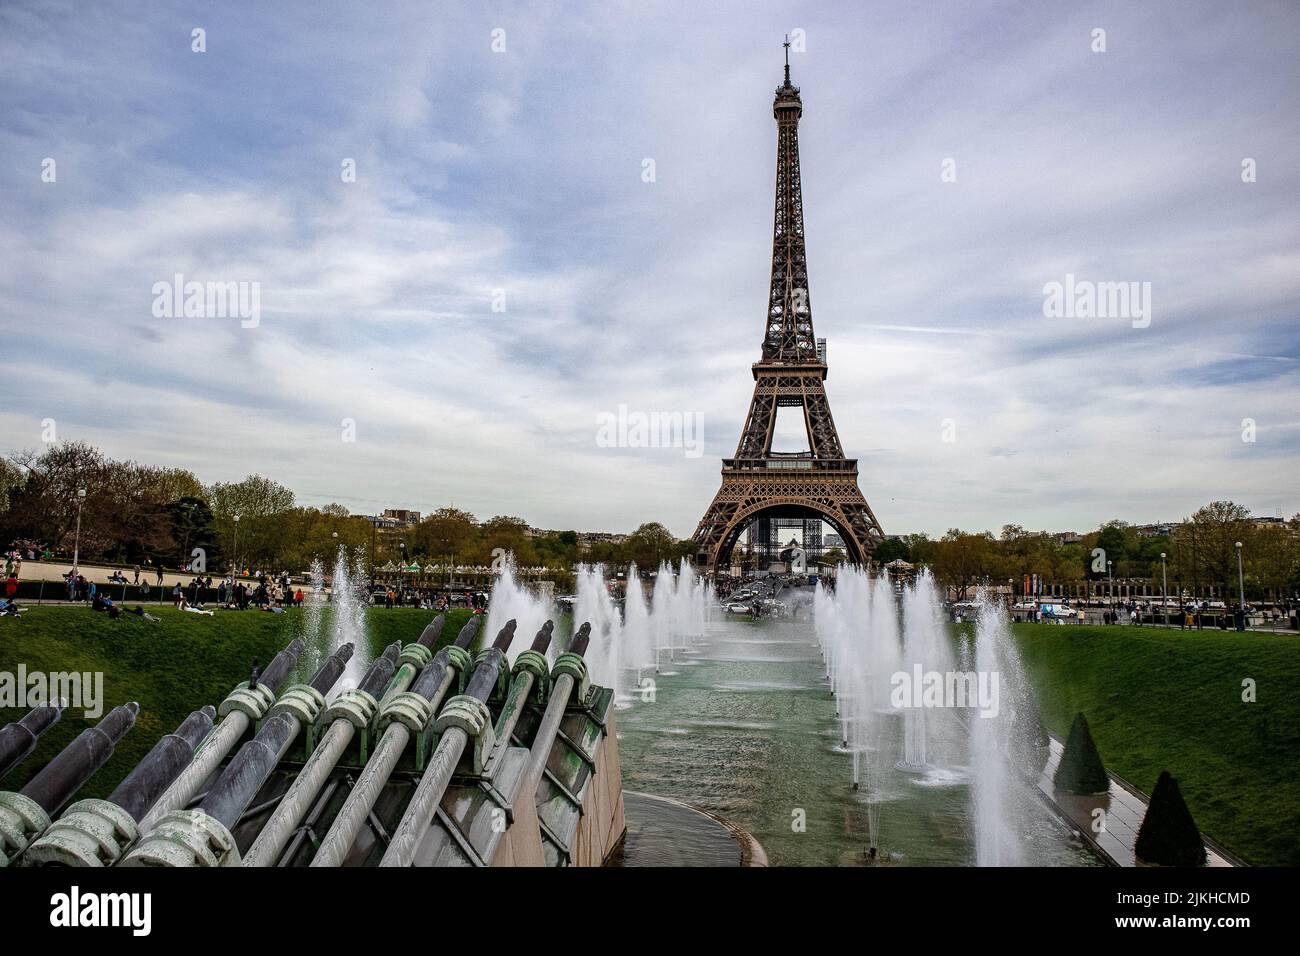 Eine weltberühmte Sehenswürdigkeit - der Eiffelturm in Paris, Frankreich Stockfoto